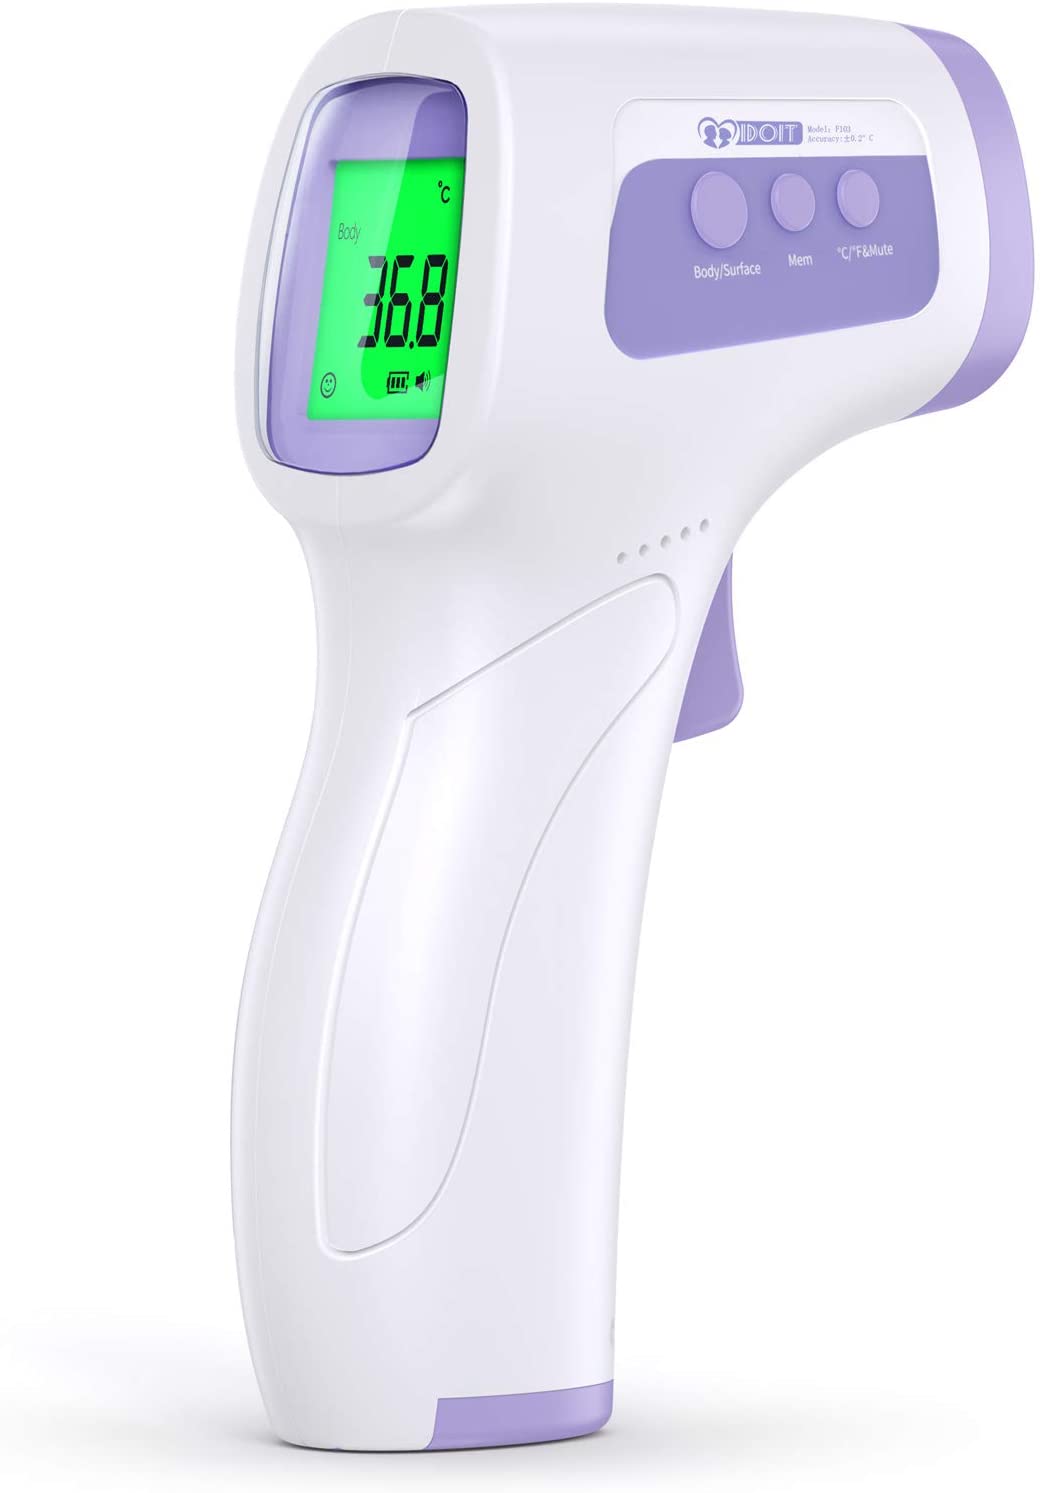 Termometro ad infrarossi professionale per febbre e oggetti senza contatto